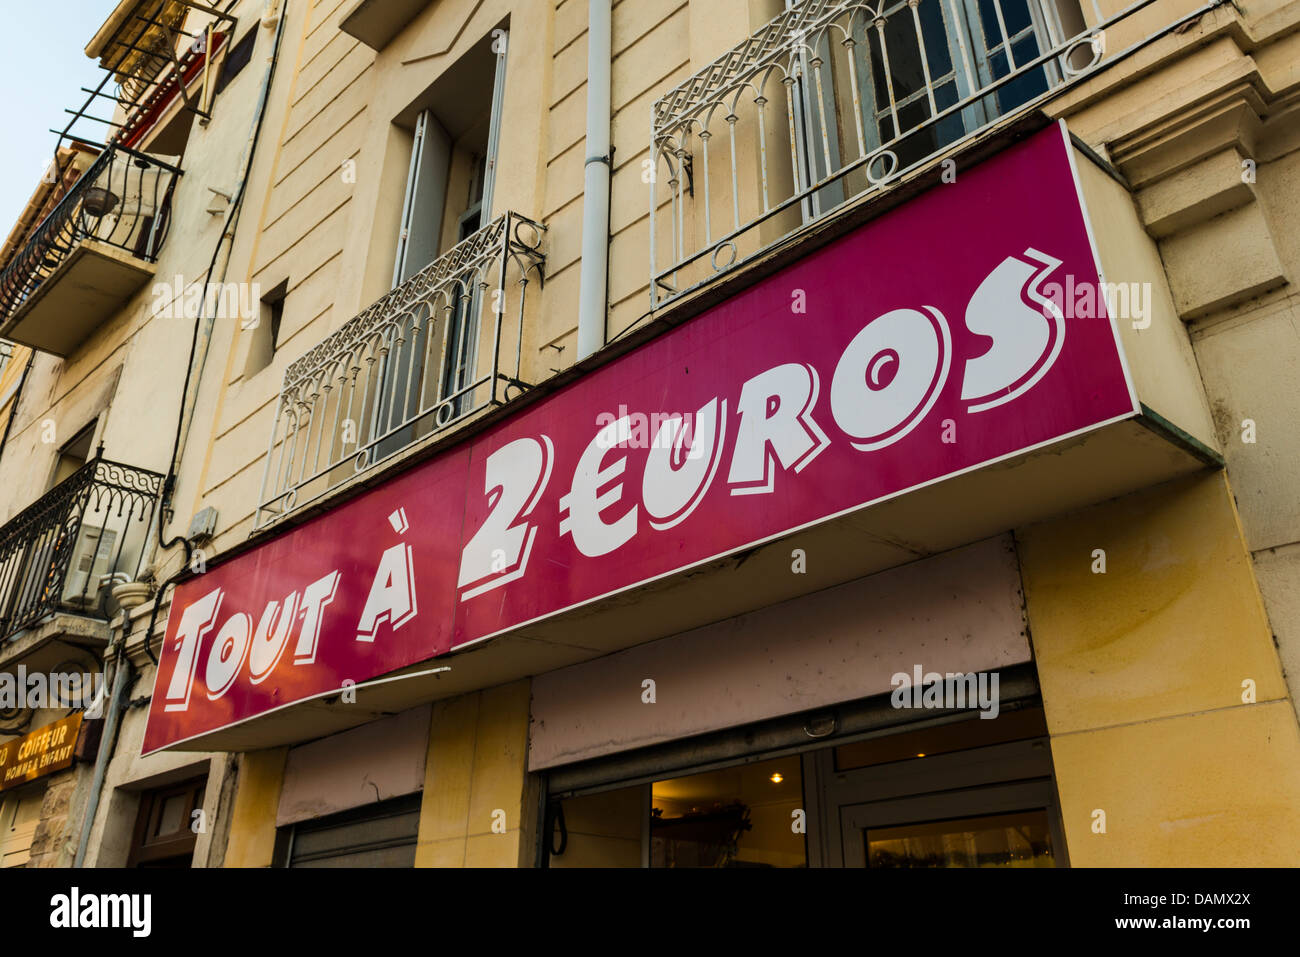 2 euro shop, Mèze, Hérault, Languedoc-Roussillon, France Stock Photo